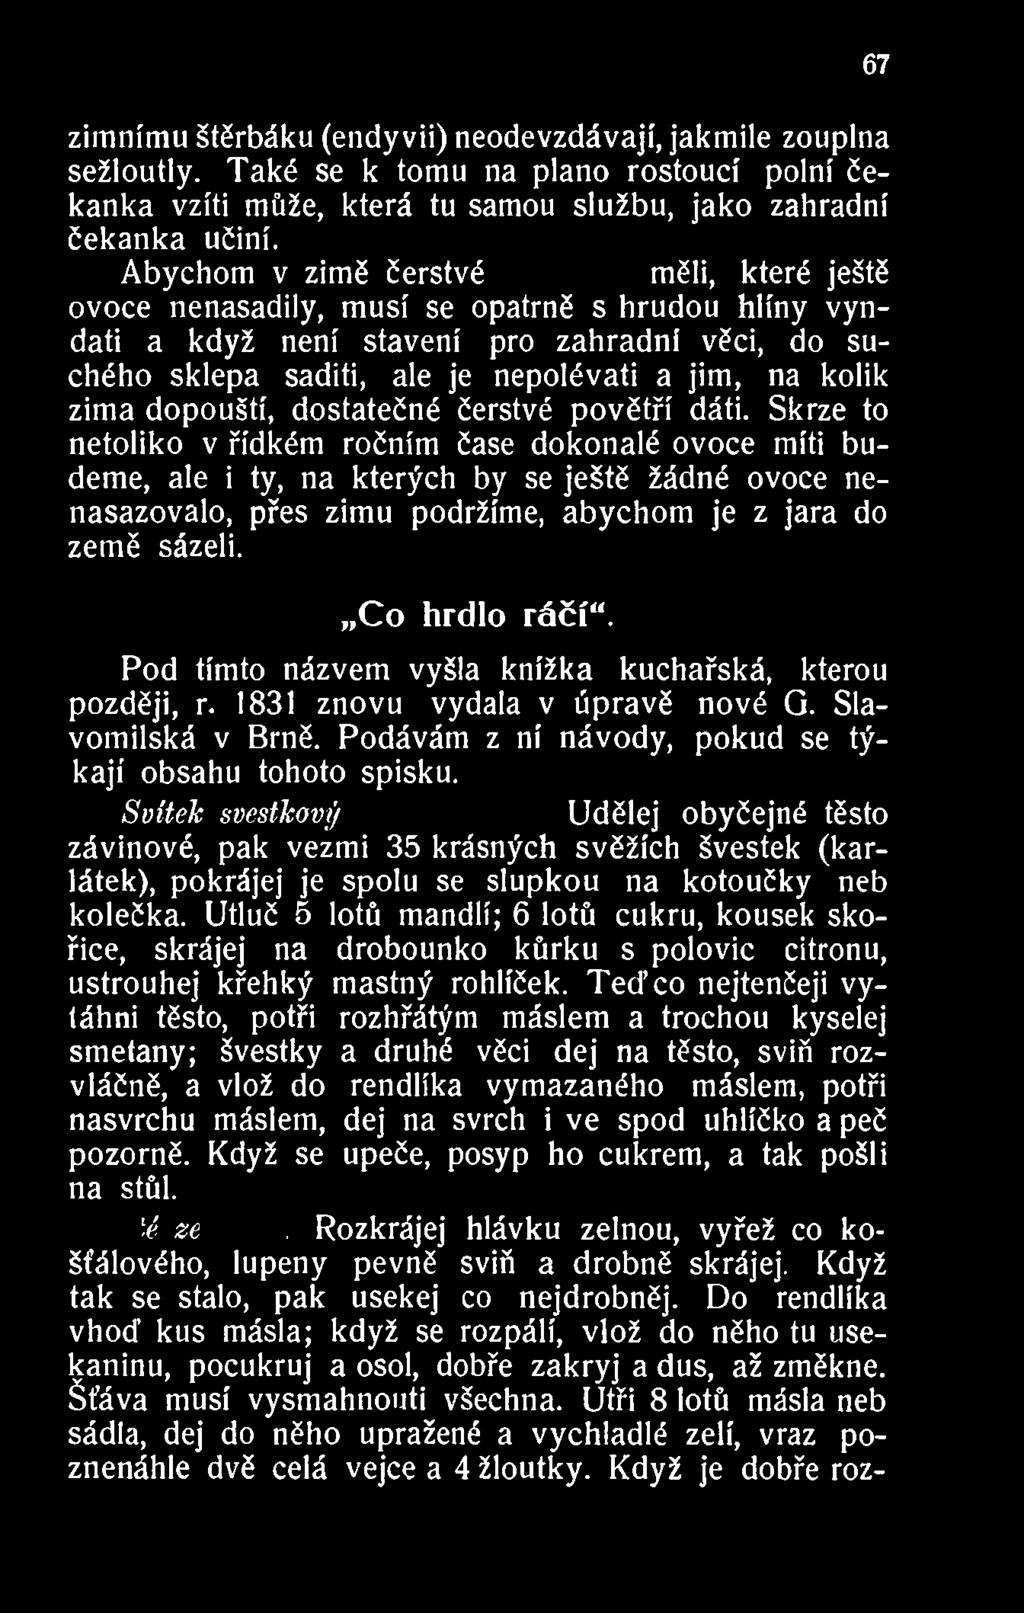 Pod tímto názvem vyšla knížka kuchařská, kterou později, r. 1831 znovu vydala v úpravě nové G. Slavomilská v Brně. Podávám z ní návody, pokud se týkají obsahu tohoto spisku.